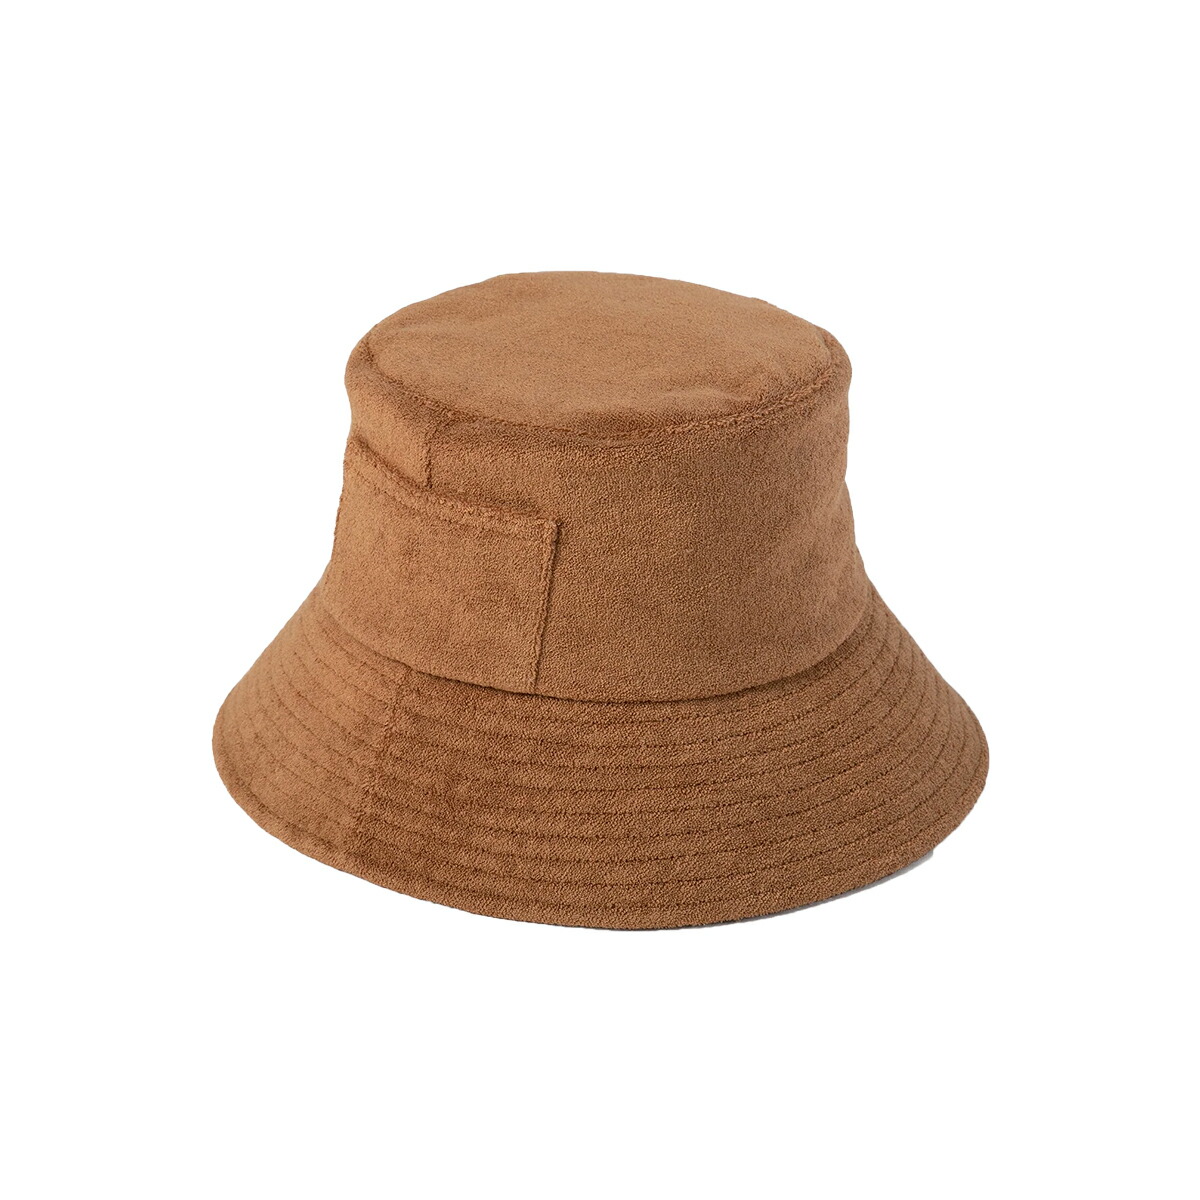 バケットハット レディース メンズ ユニセックス ラック ラックオブカラー Lack of Color UVカット Wave Bucket Terry  UPF50+ 帽子 紫外線対策 ポケット付き